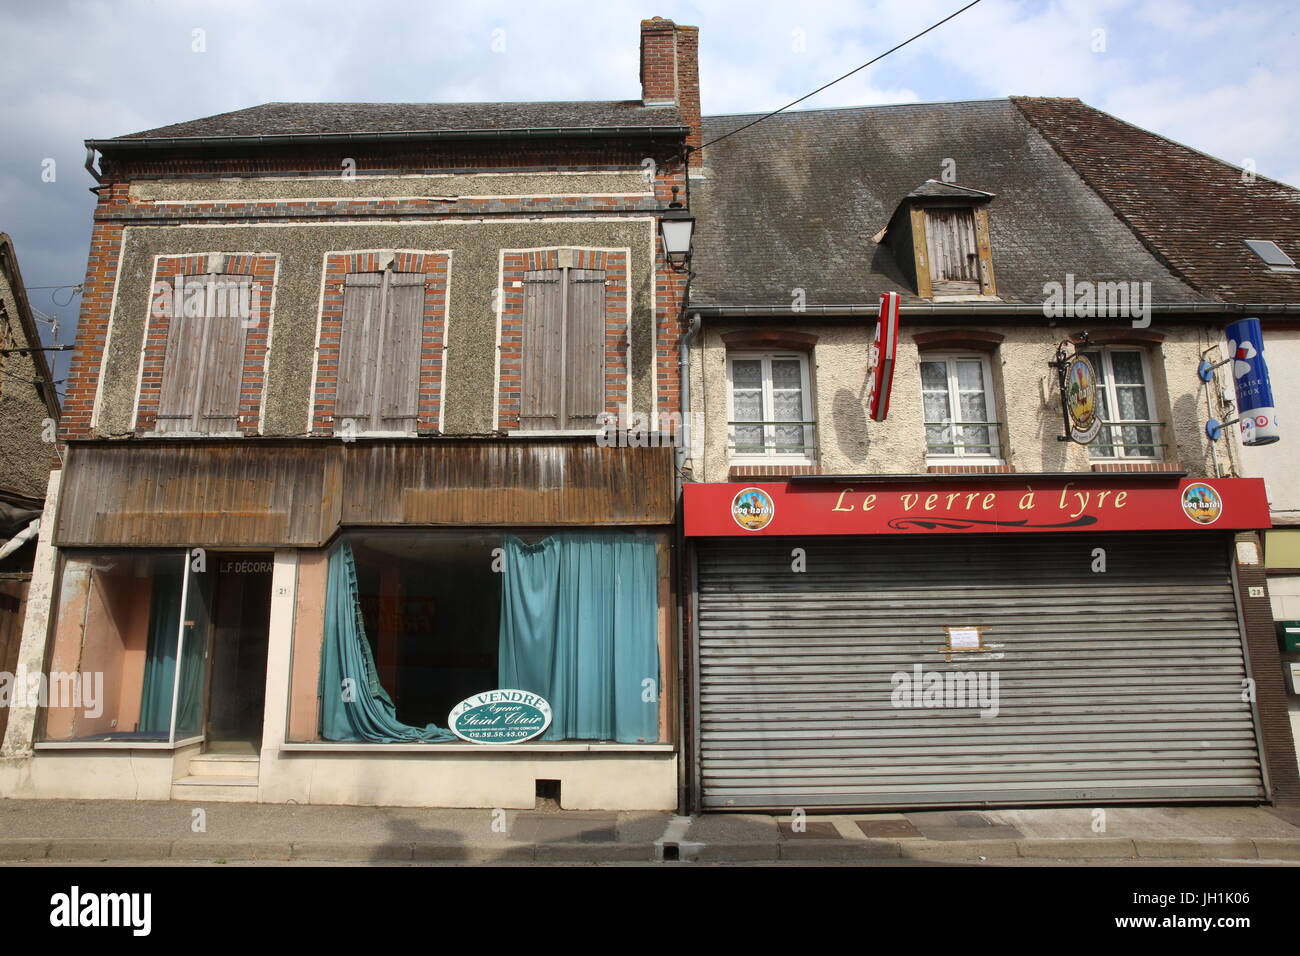 Geschlossenen Geschäfte in La Neuve Lyra, Normandie. Frankreich. Stockfoto